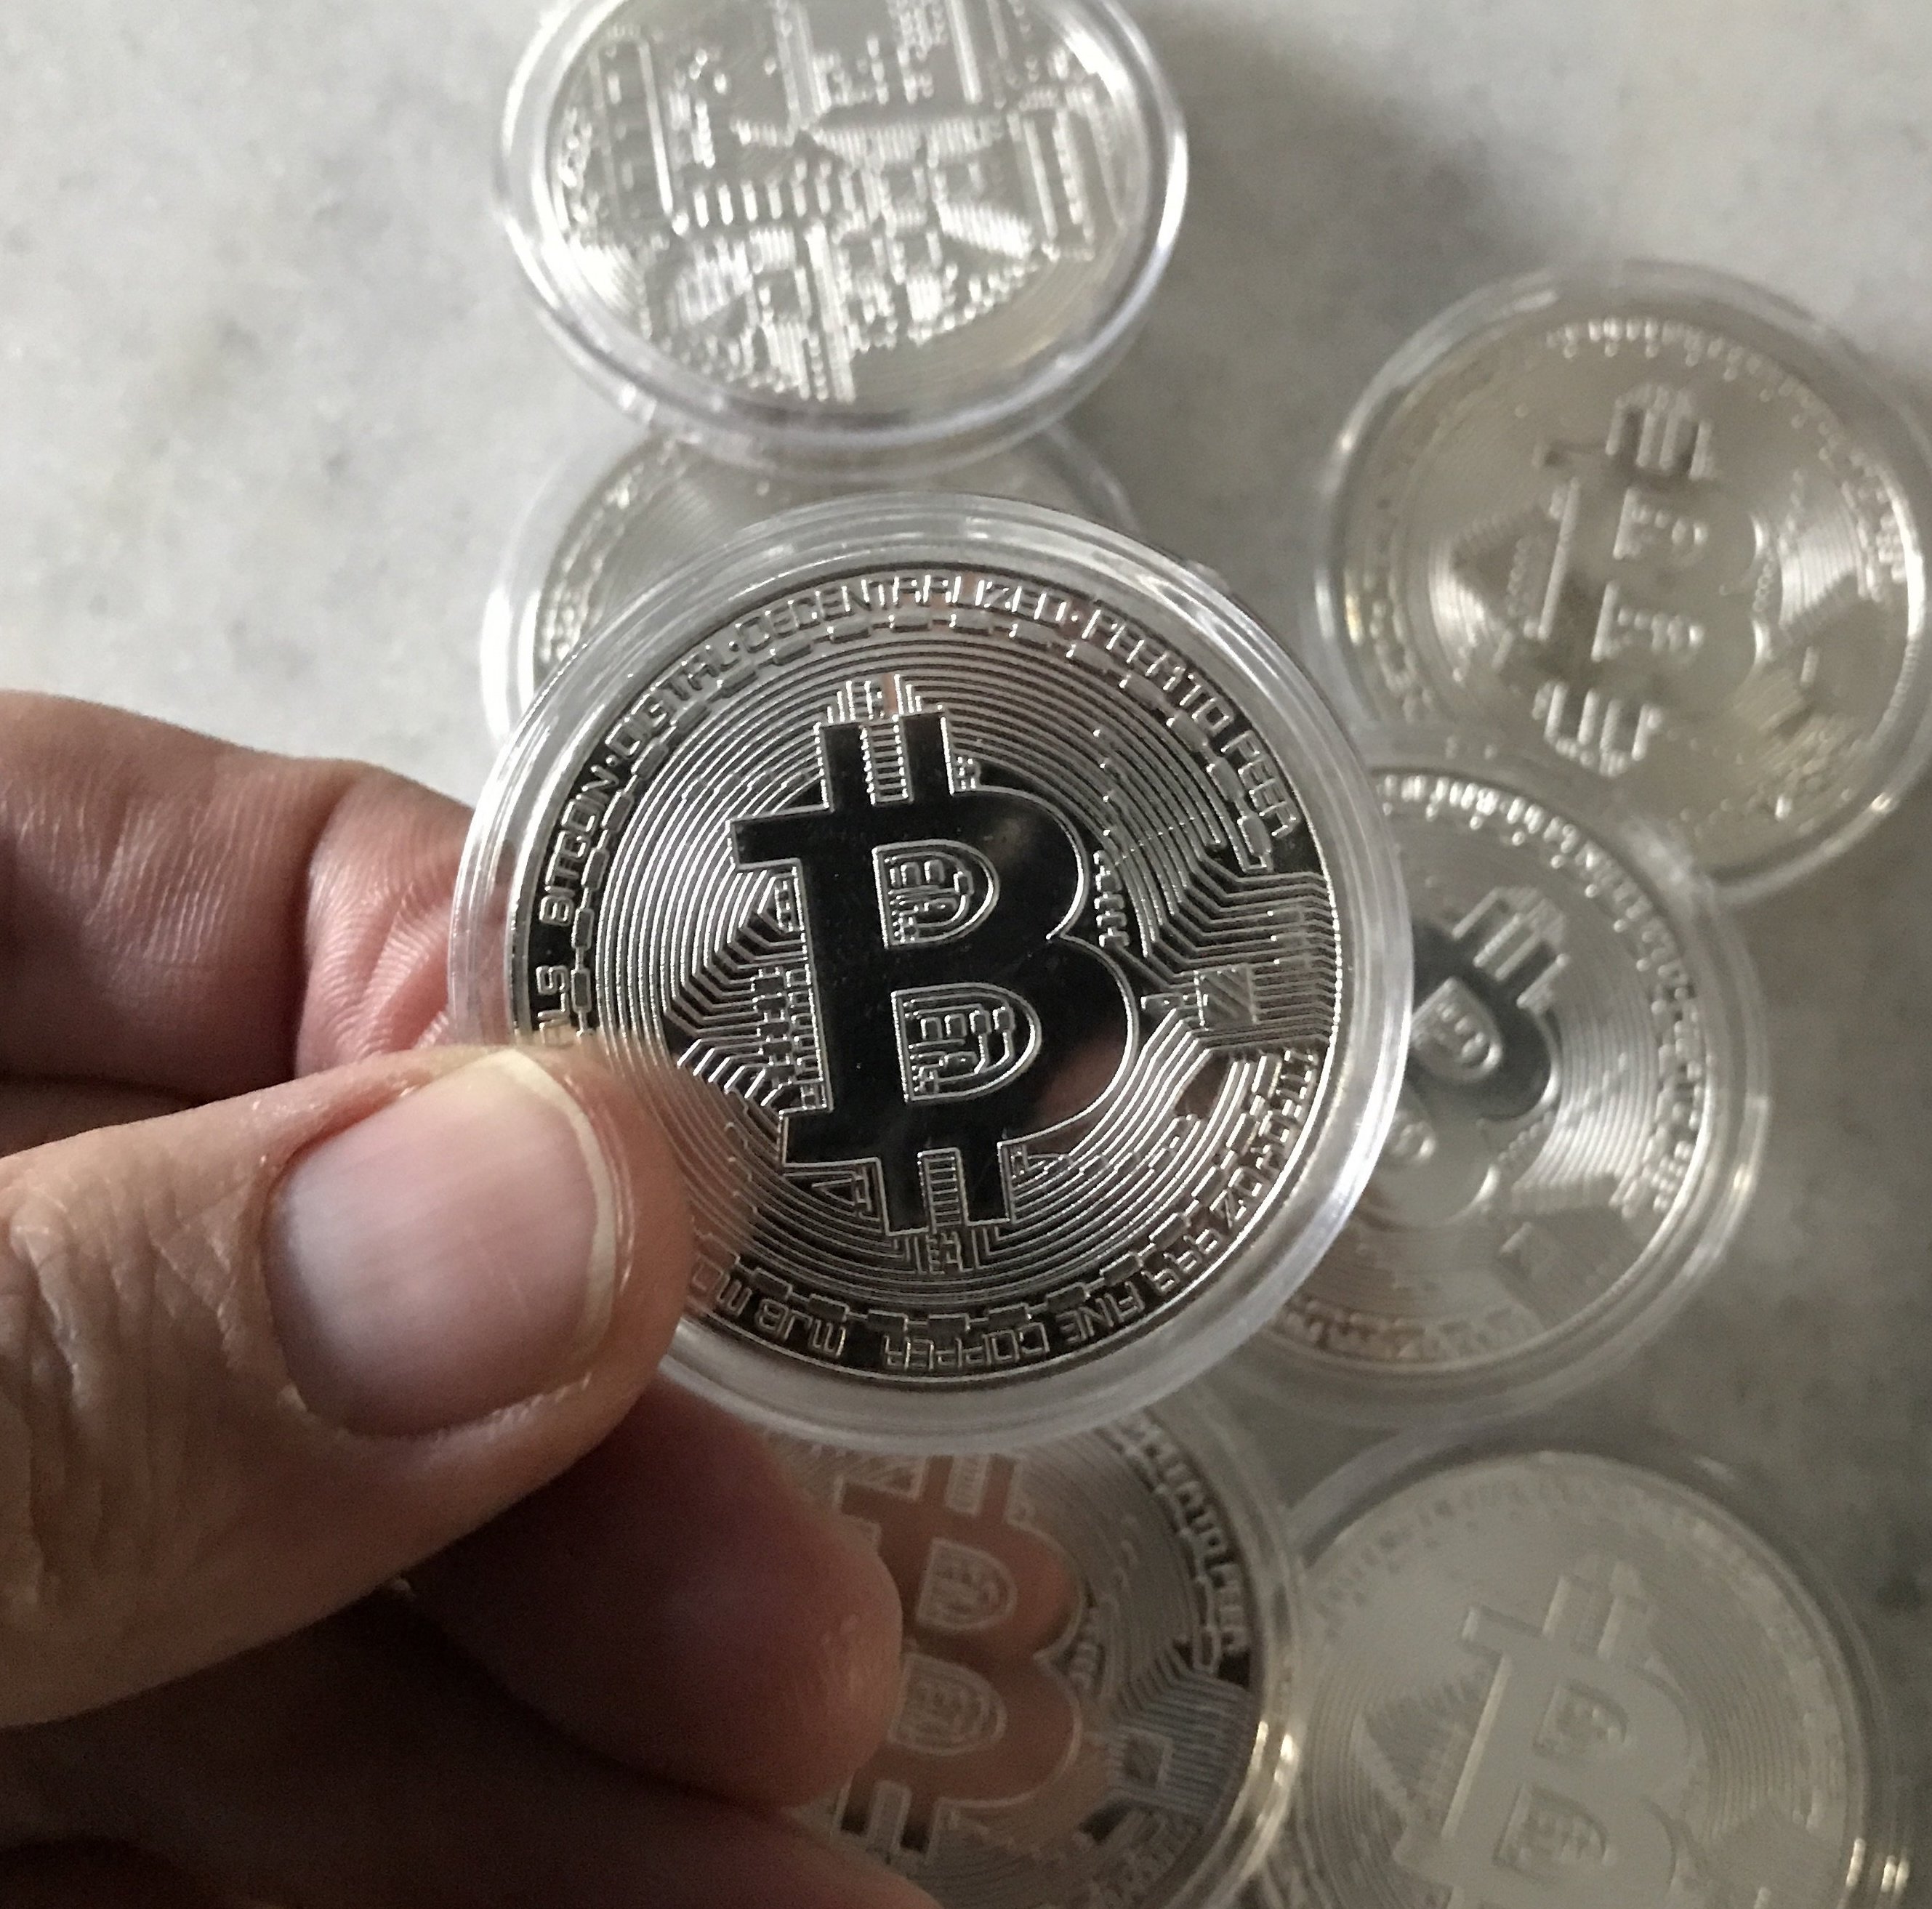 A Bitcoin Cash Coin